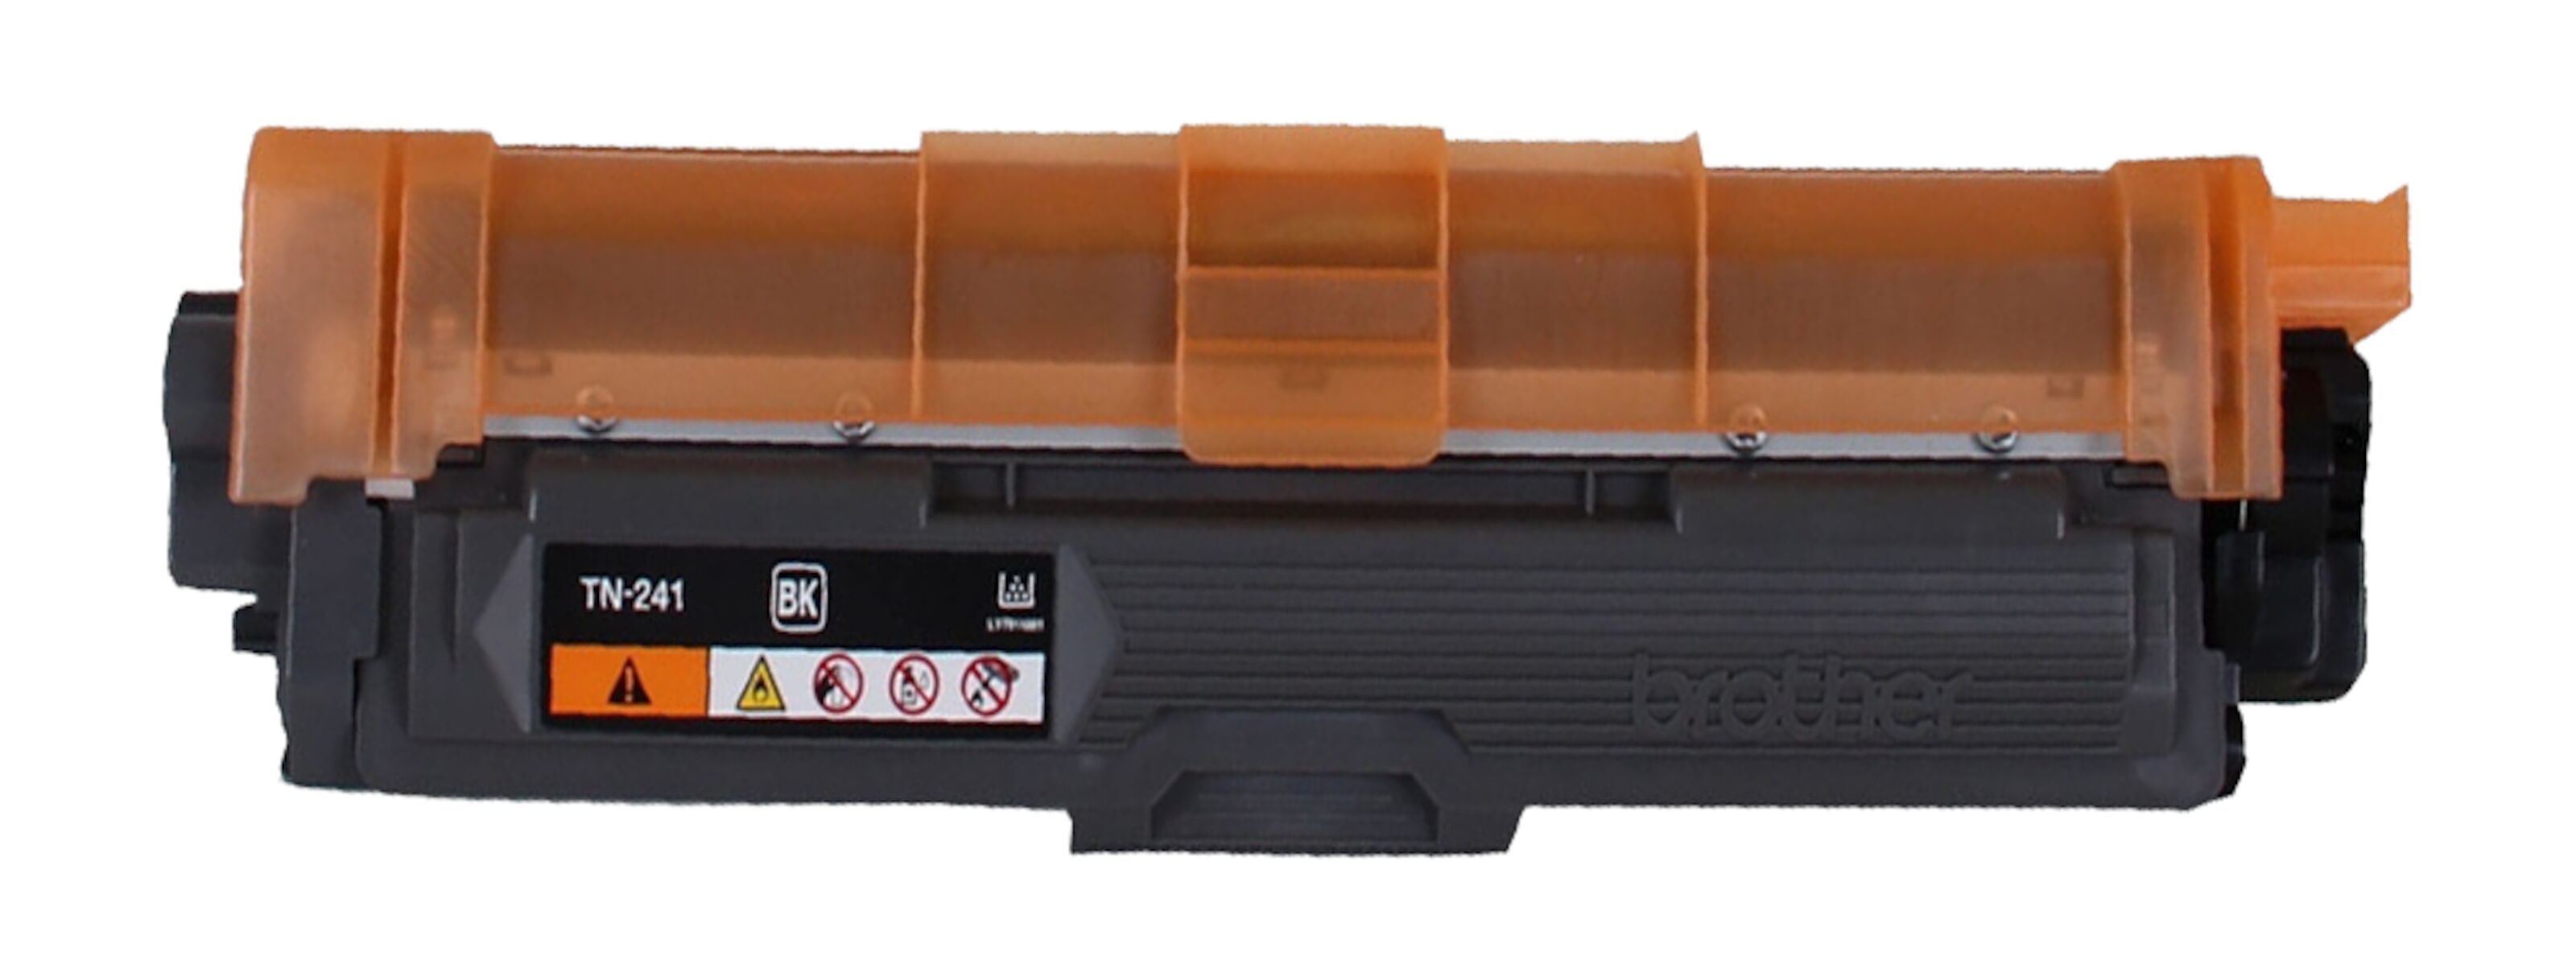 Brother Toner Cartridge - TN-241 Kit - C/M/Y/BK - TN241 KIT